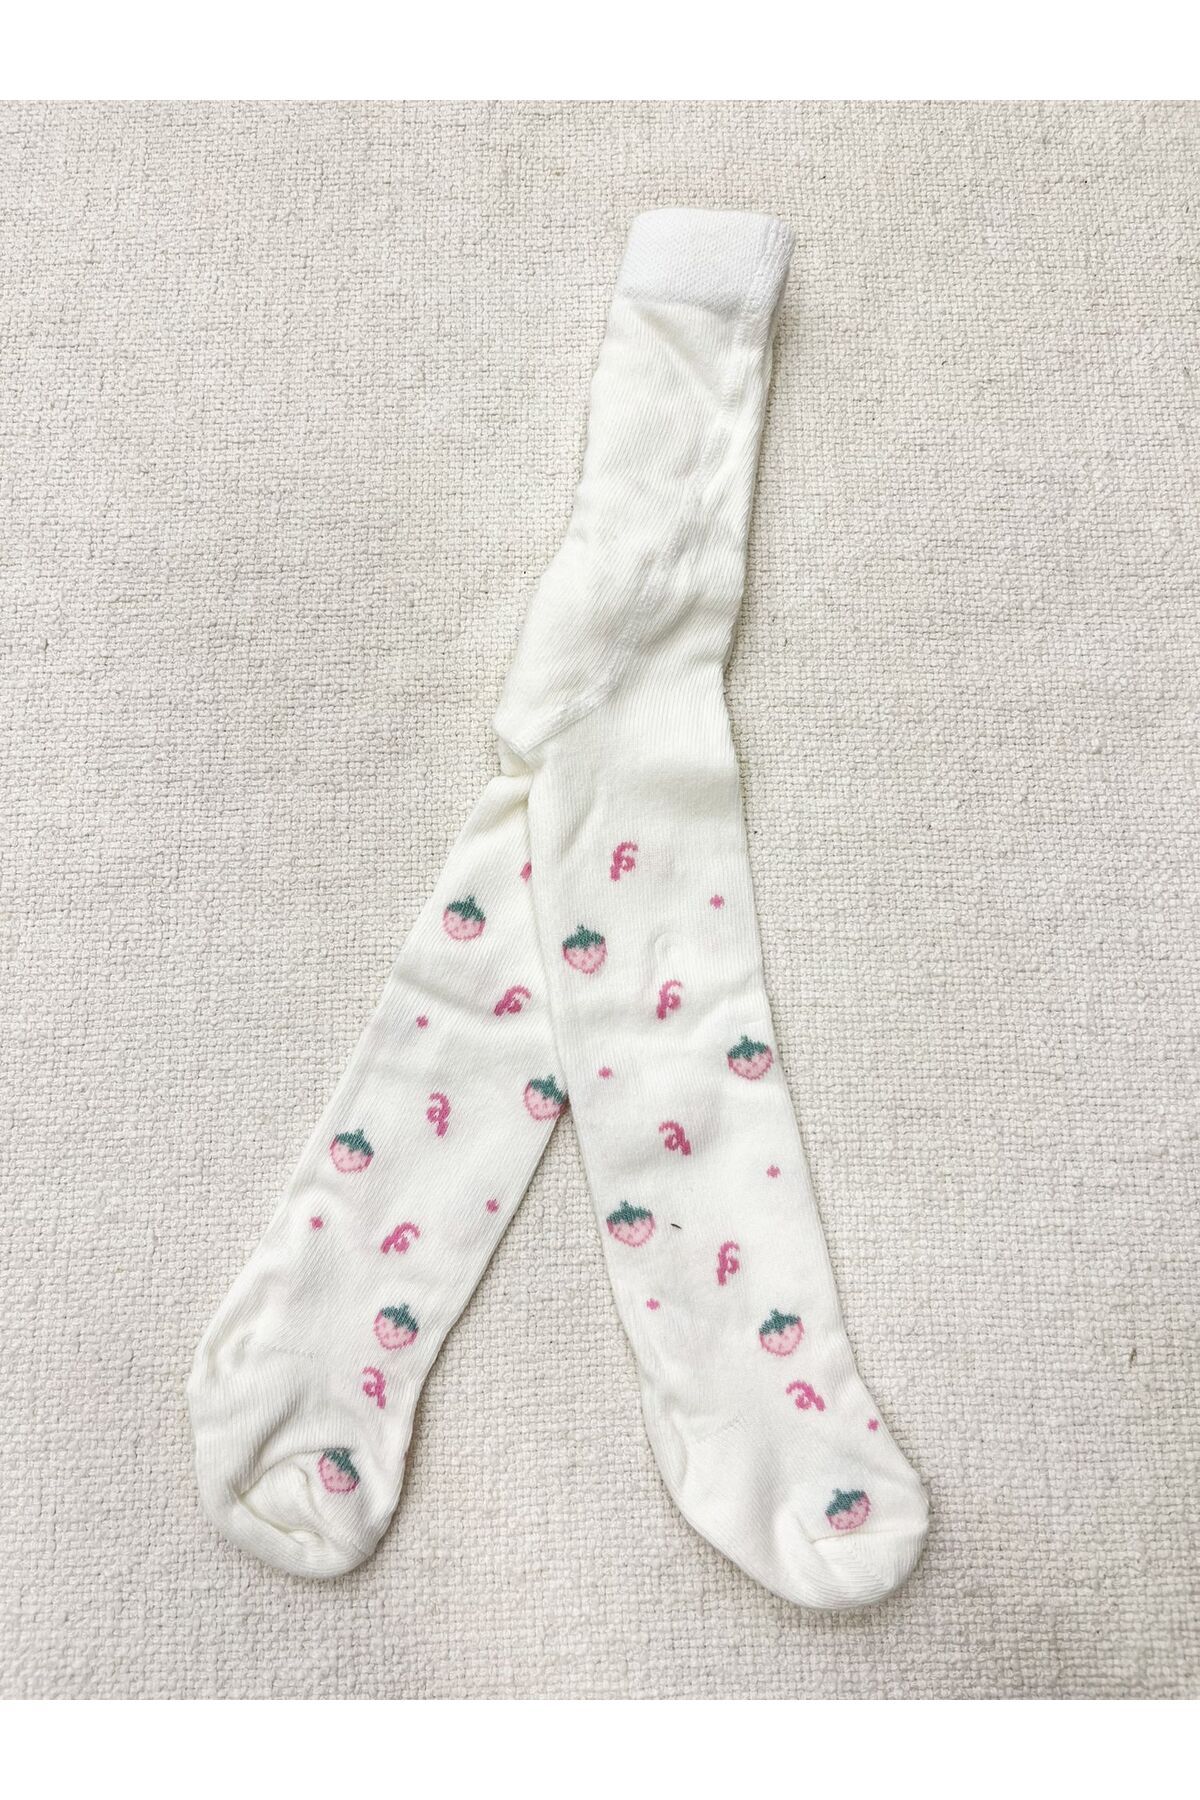 Katamino KATAMİNO kız bebek külotlu çorap çilek desenli